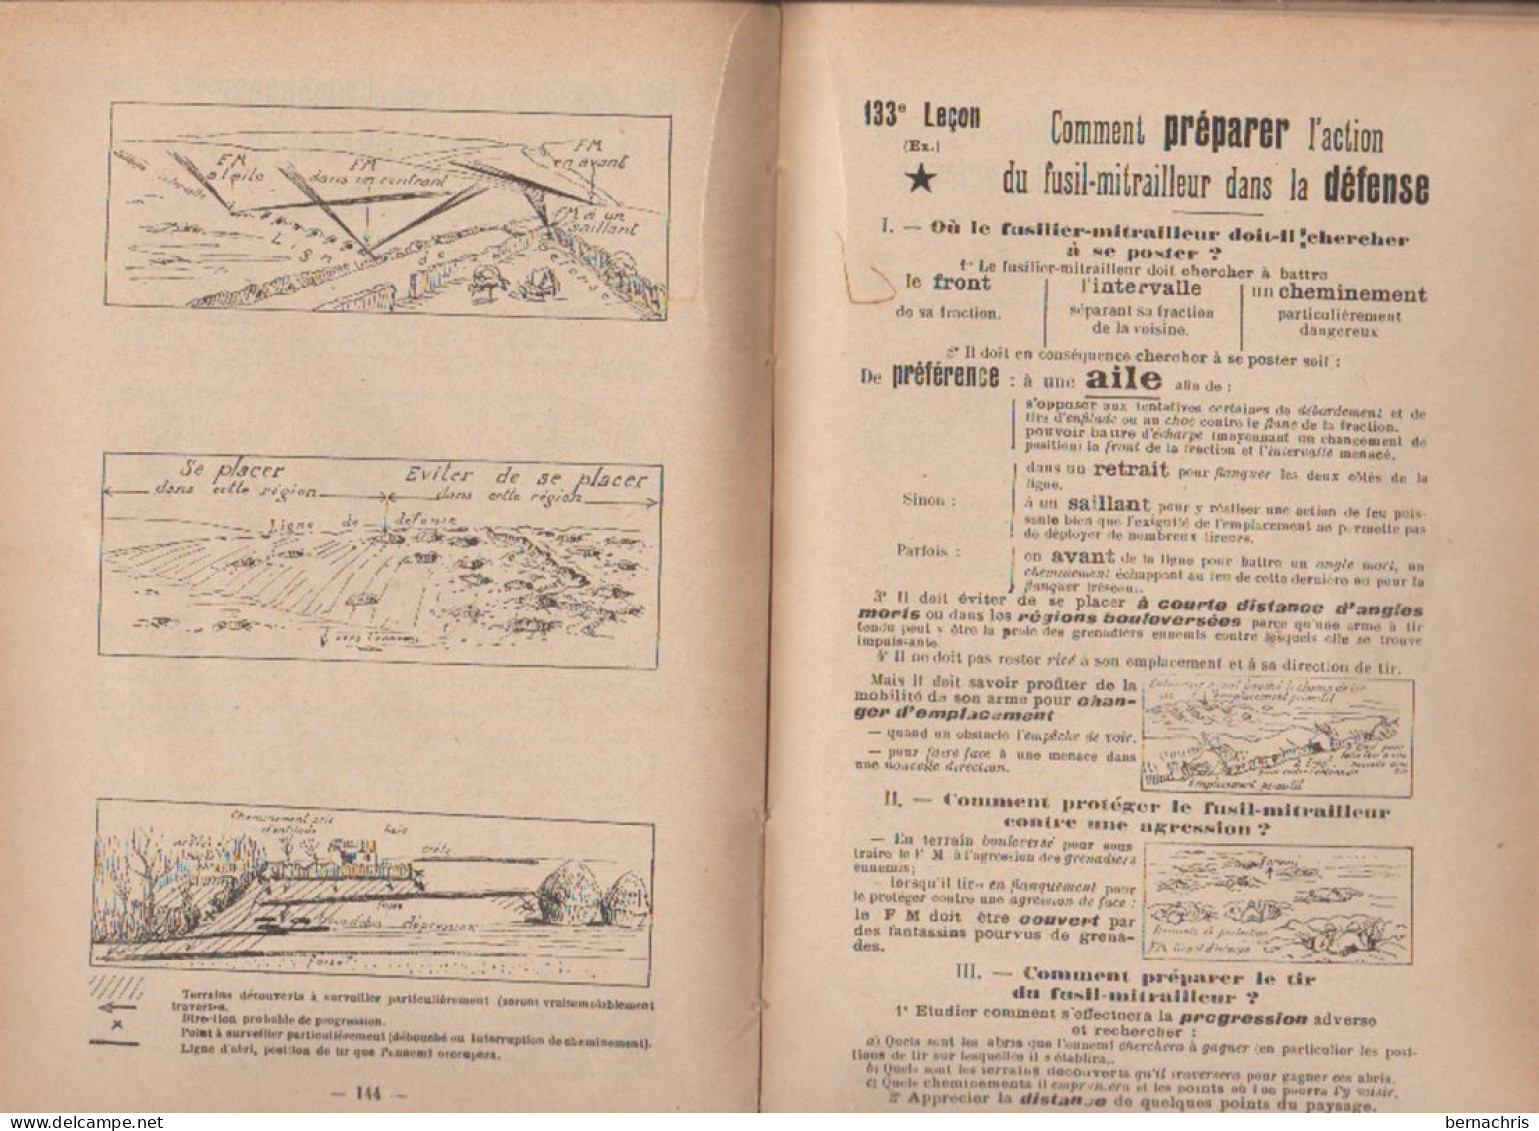 Les Leçons Du Fantassin édité En 1931 - Français